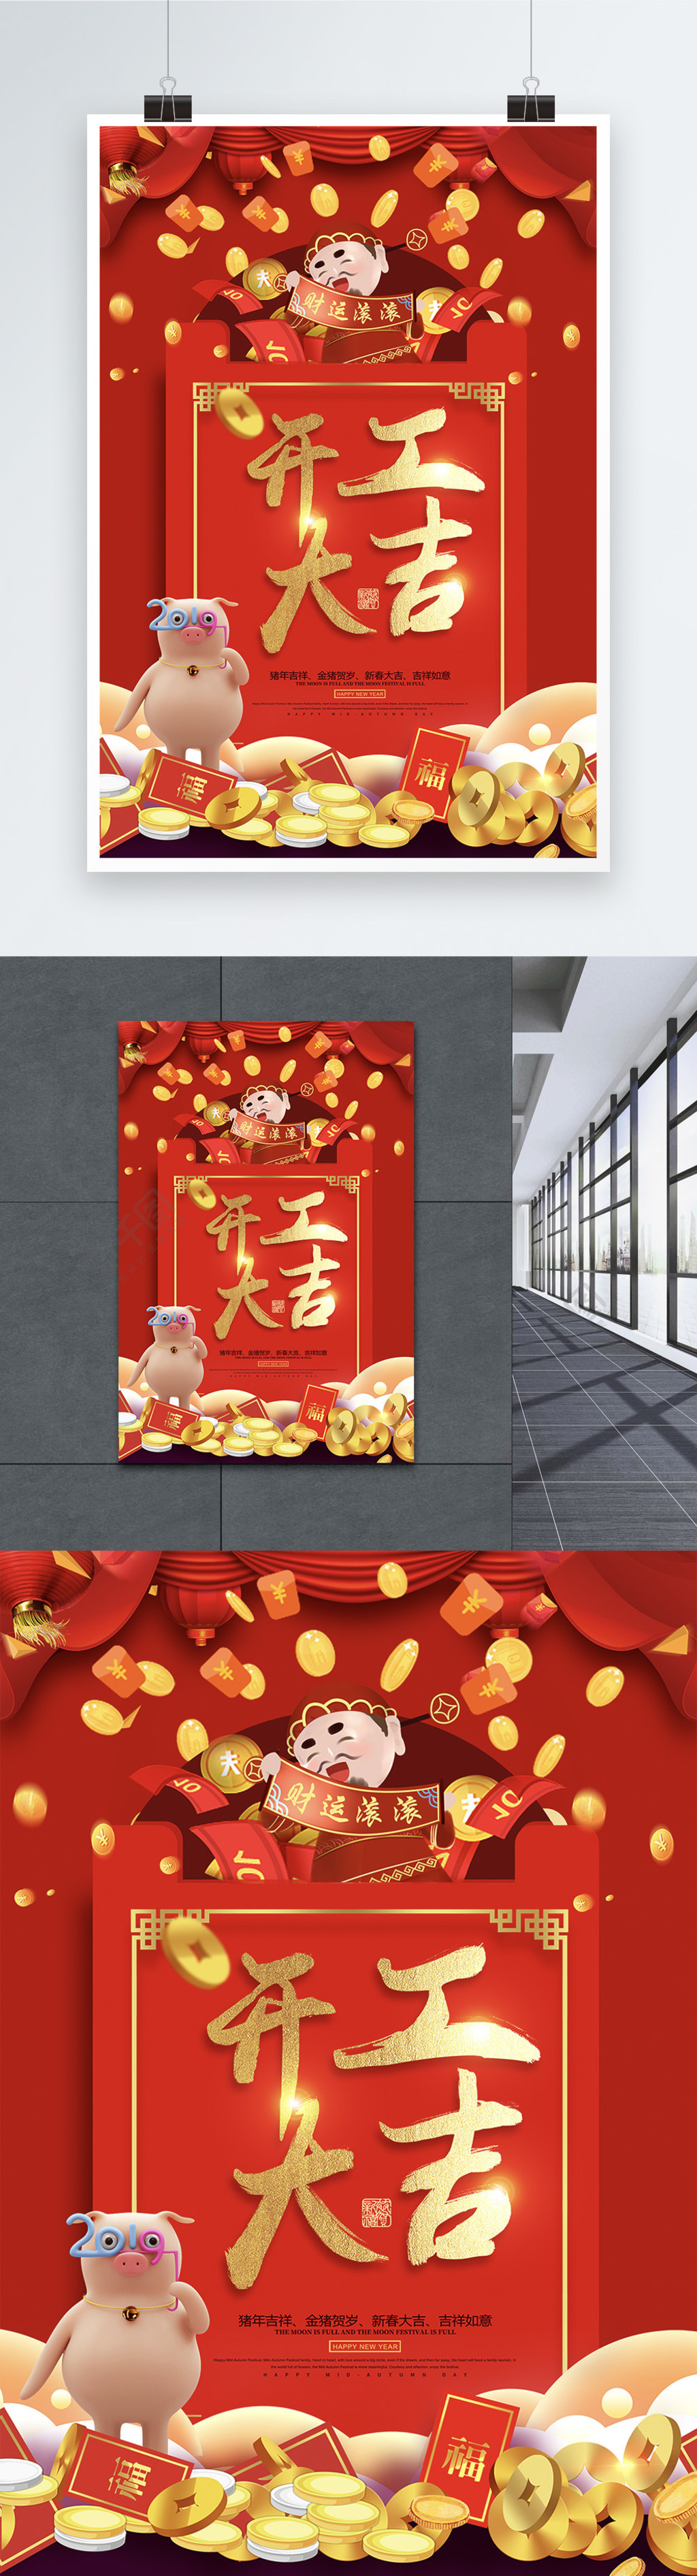 开工大吉红包祝福语系列新年节日海报设计3年前发布